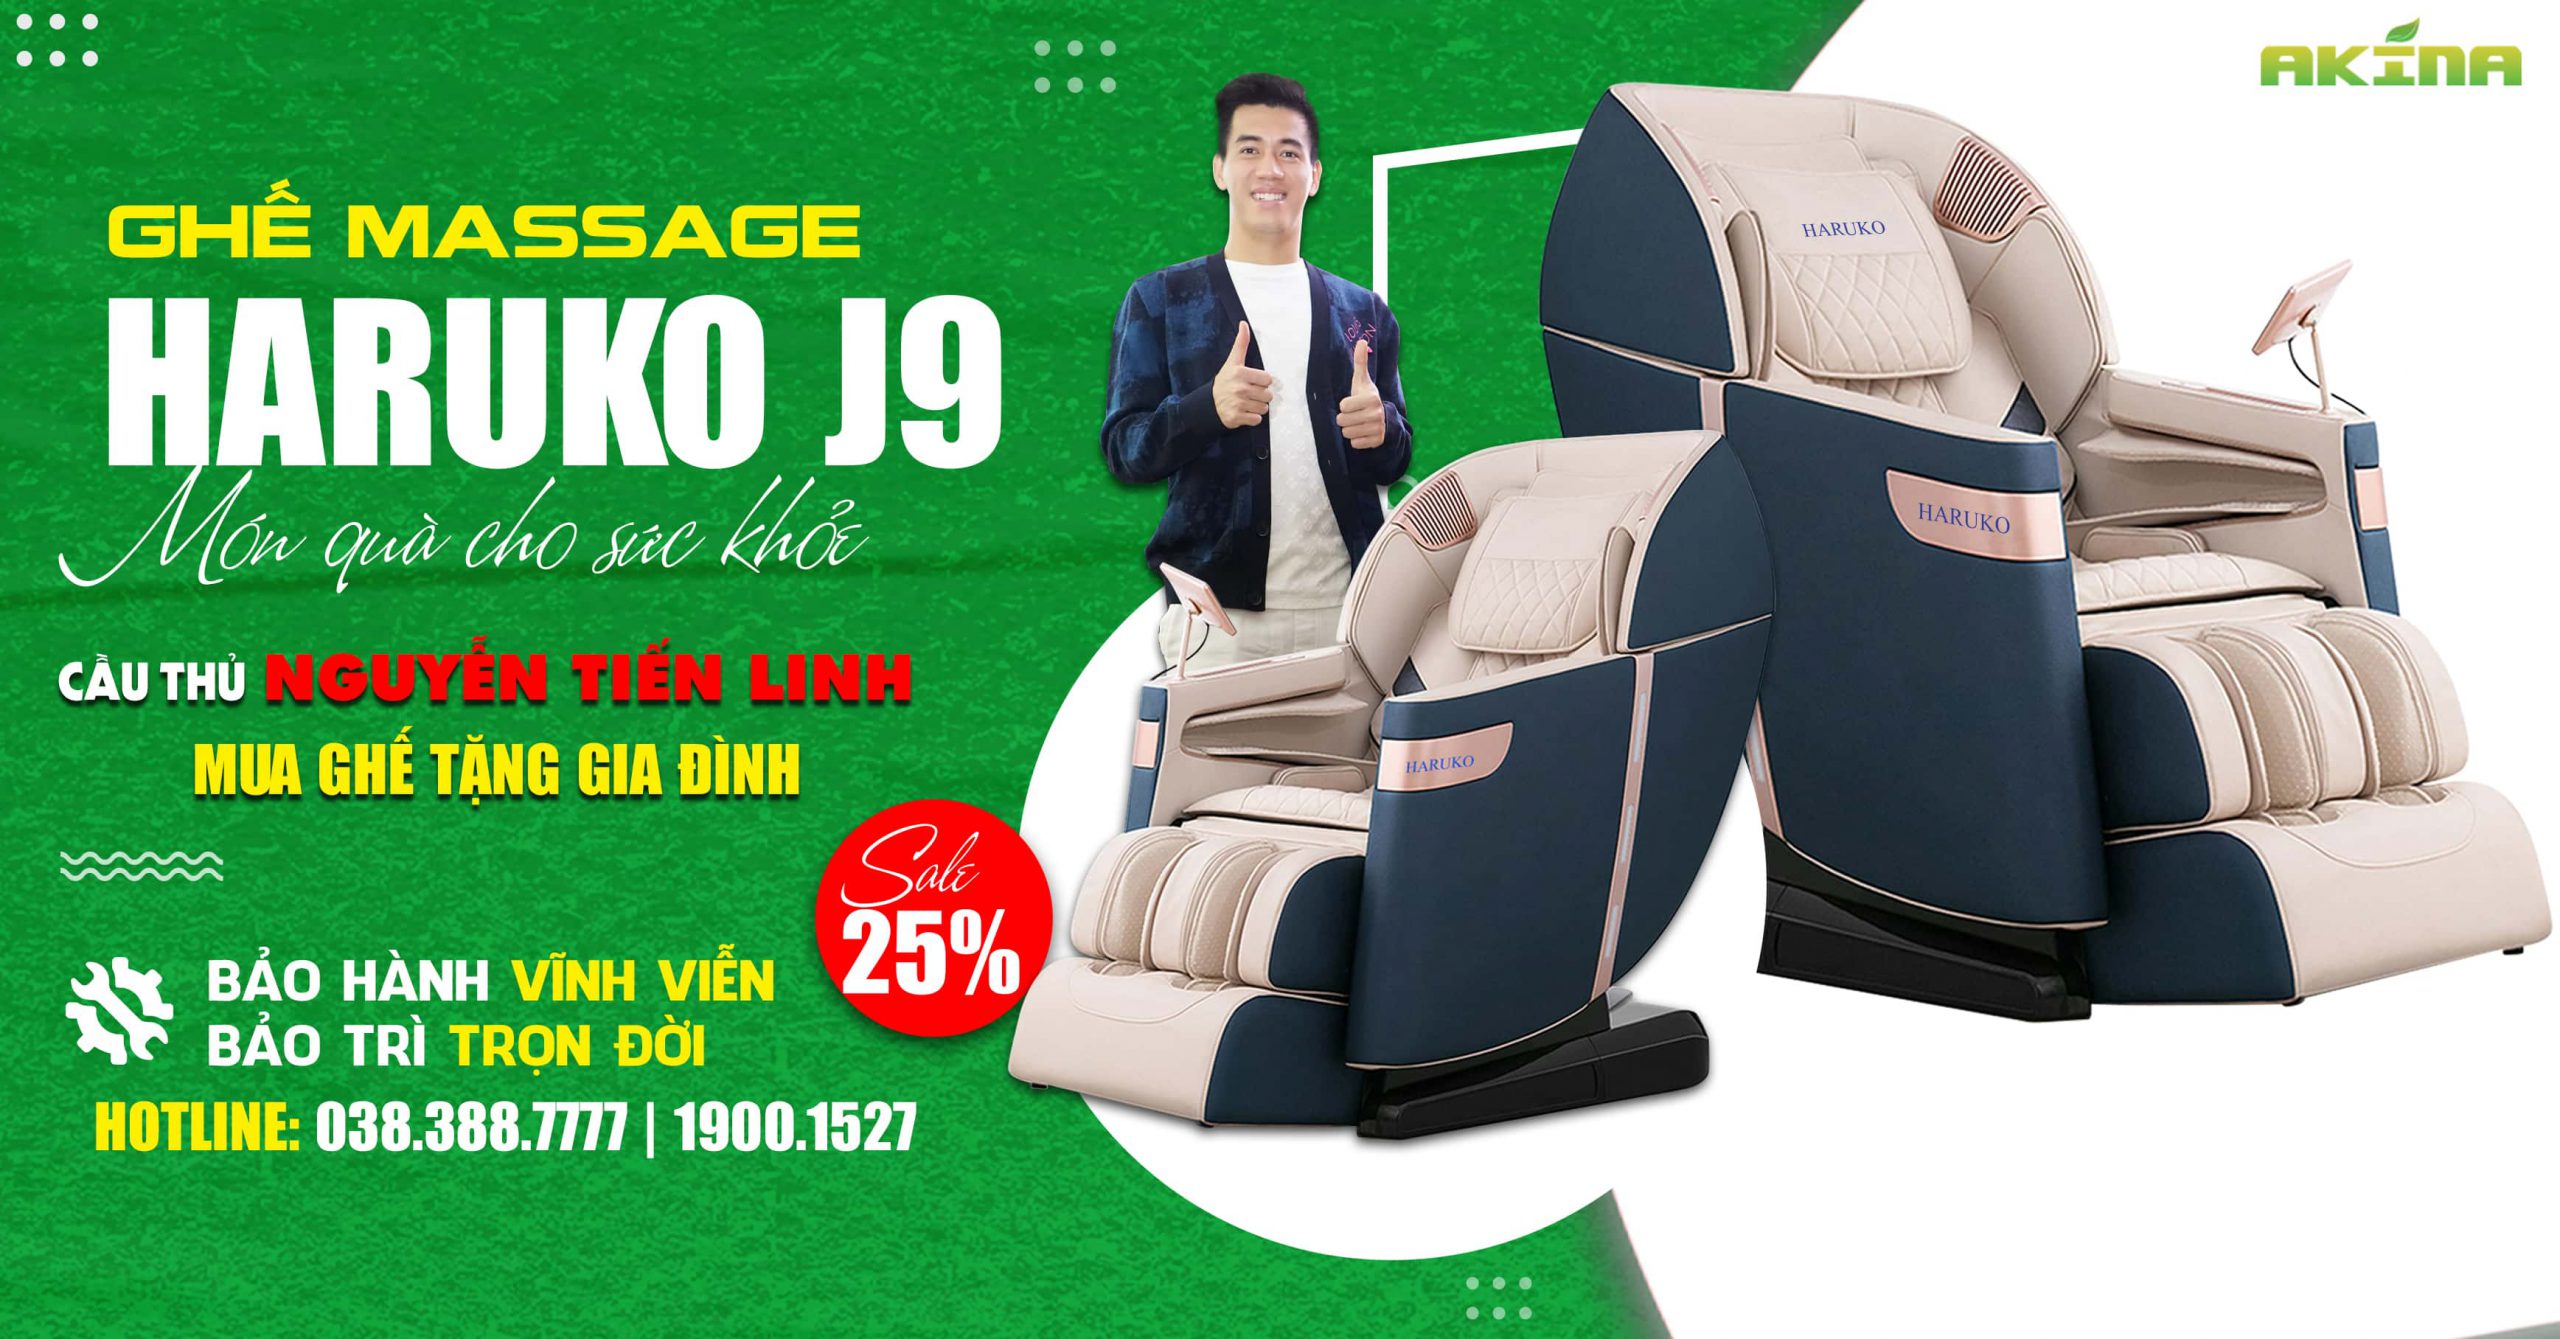 Haruko-J9 là sản phẩm ghế massage cao cấp với thiết kế hiện đại,sang trọng cùng đầy đủ những tính năng ưu việt nhất hiện nay